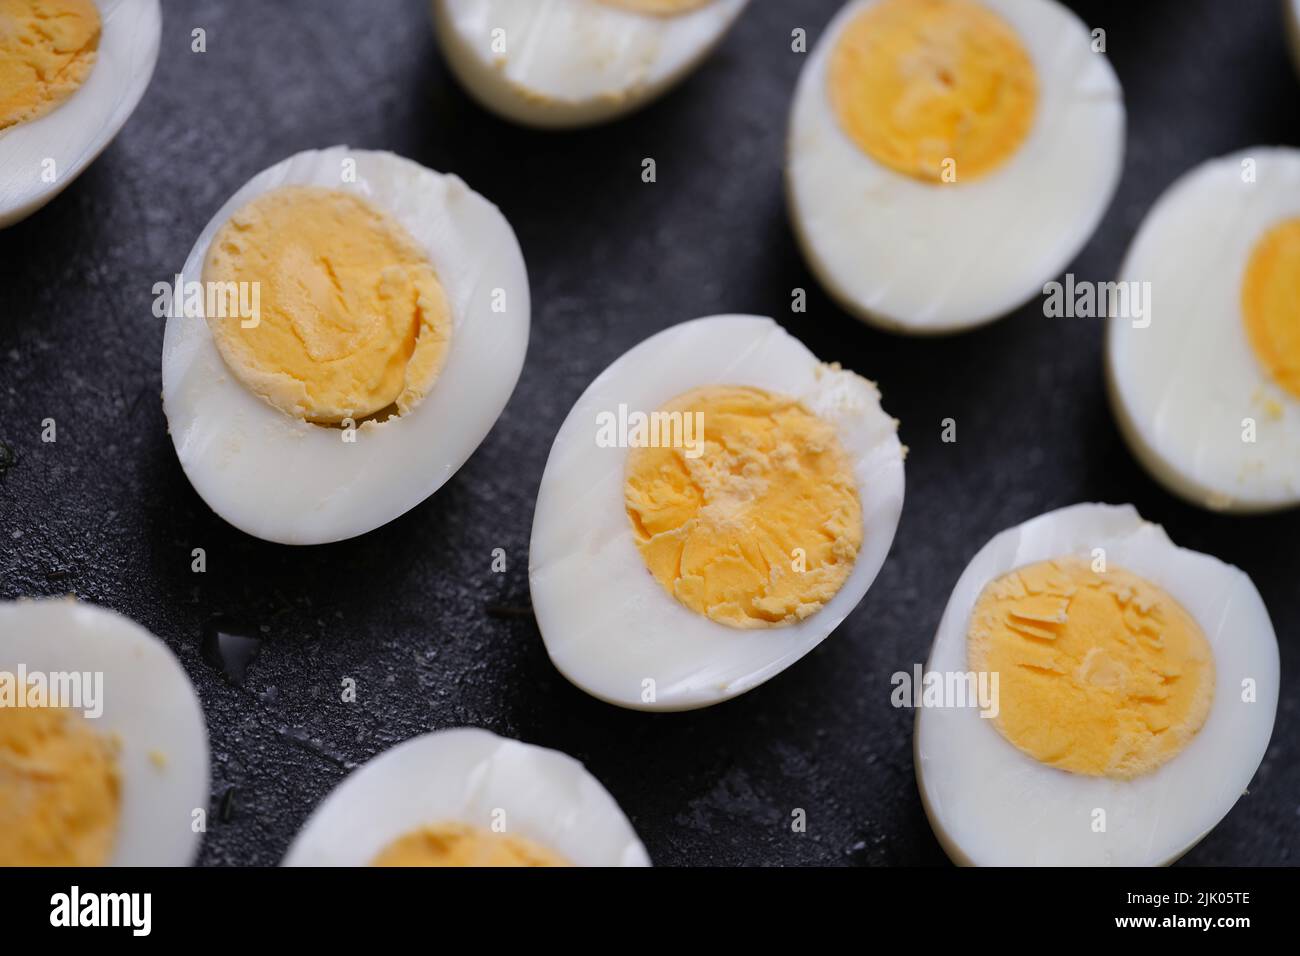 Sliced hard boiled eggs on dark background Stock Photo